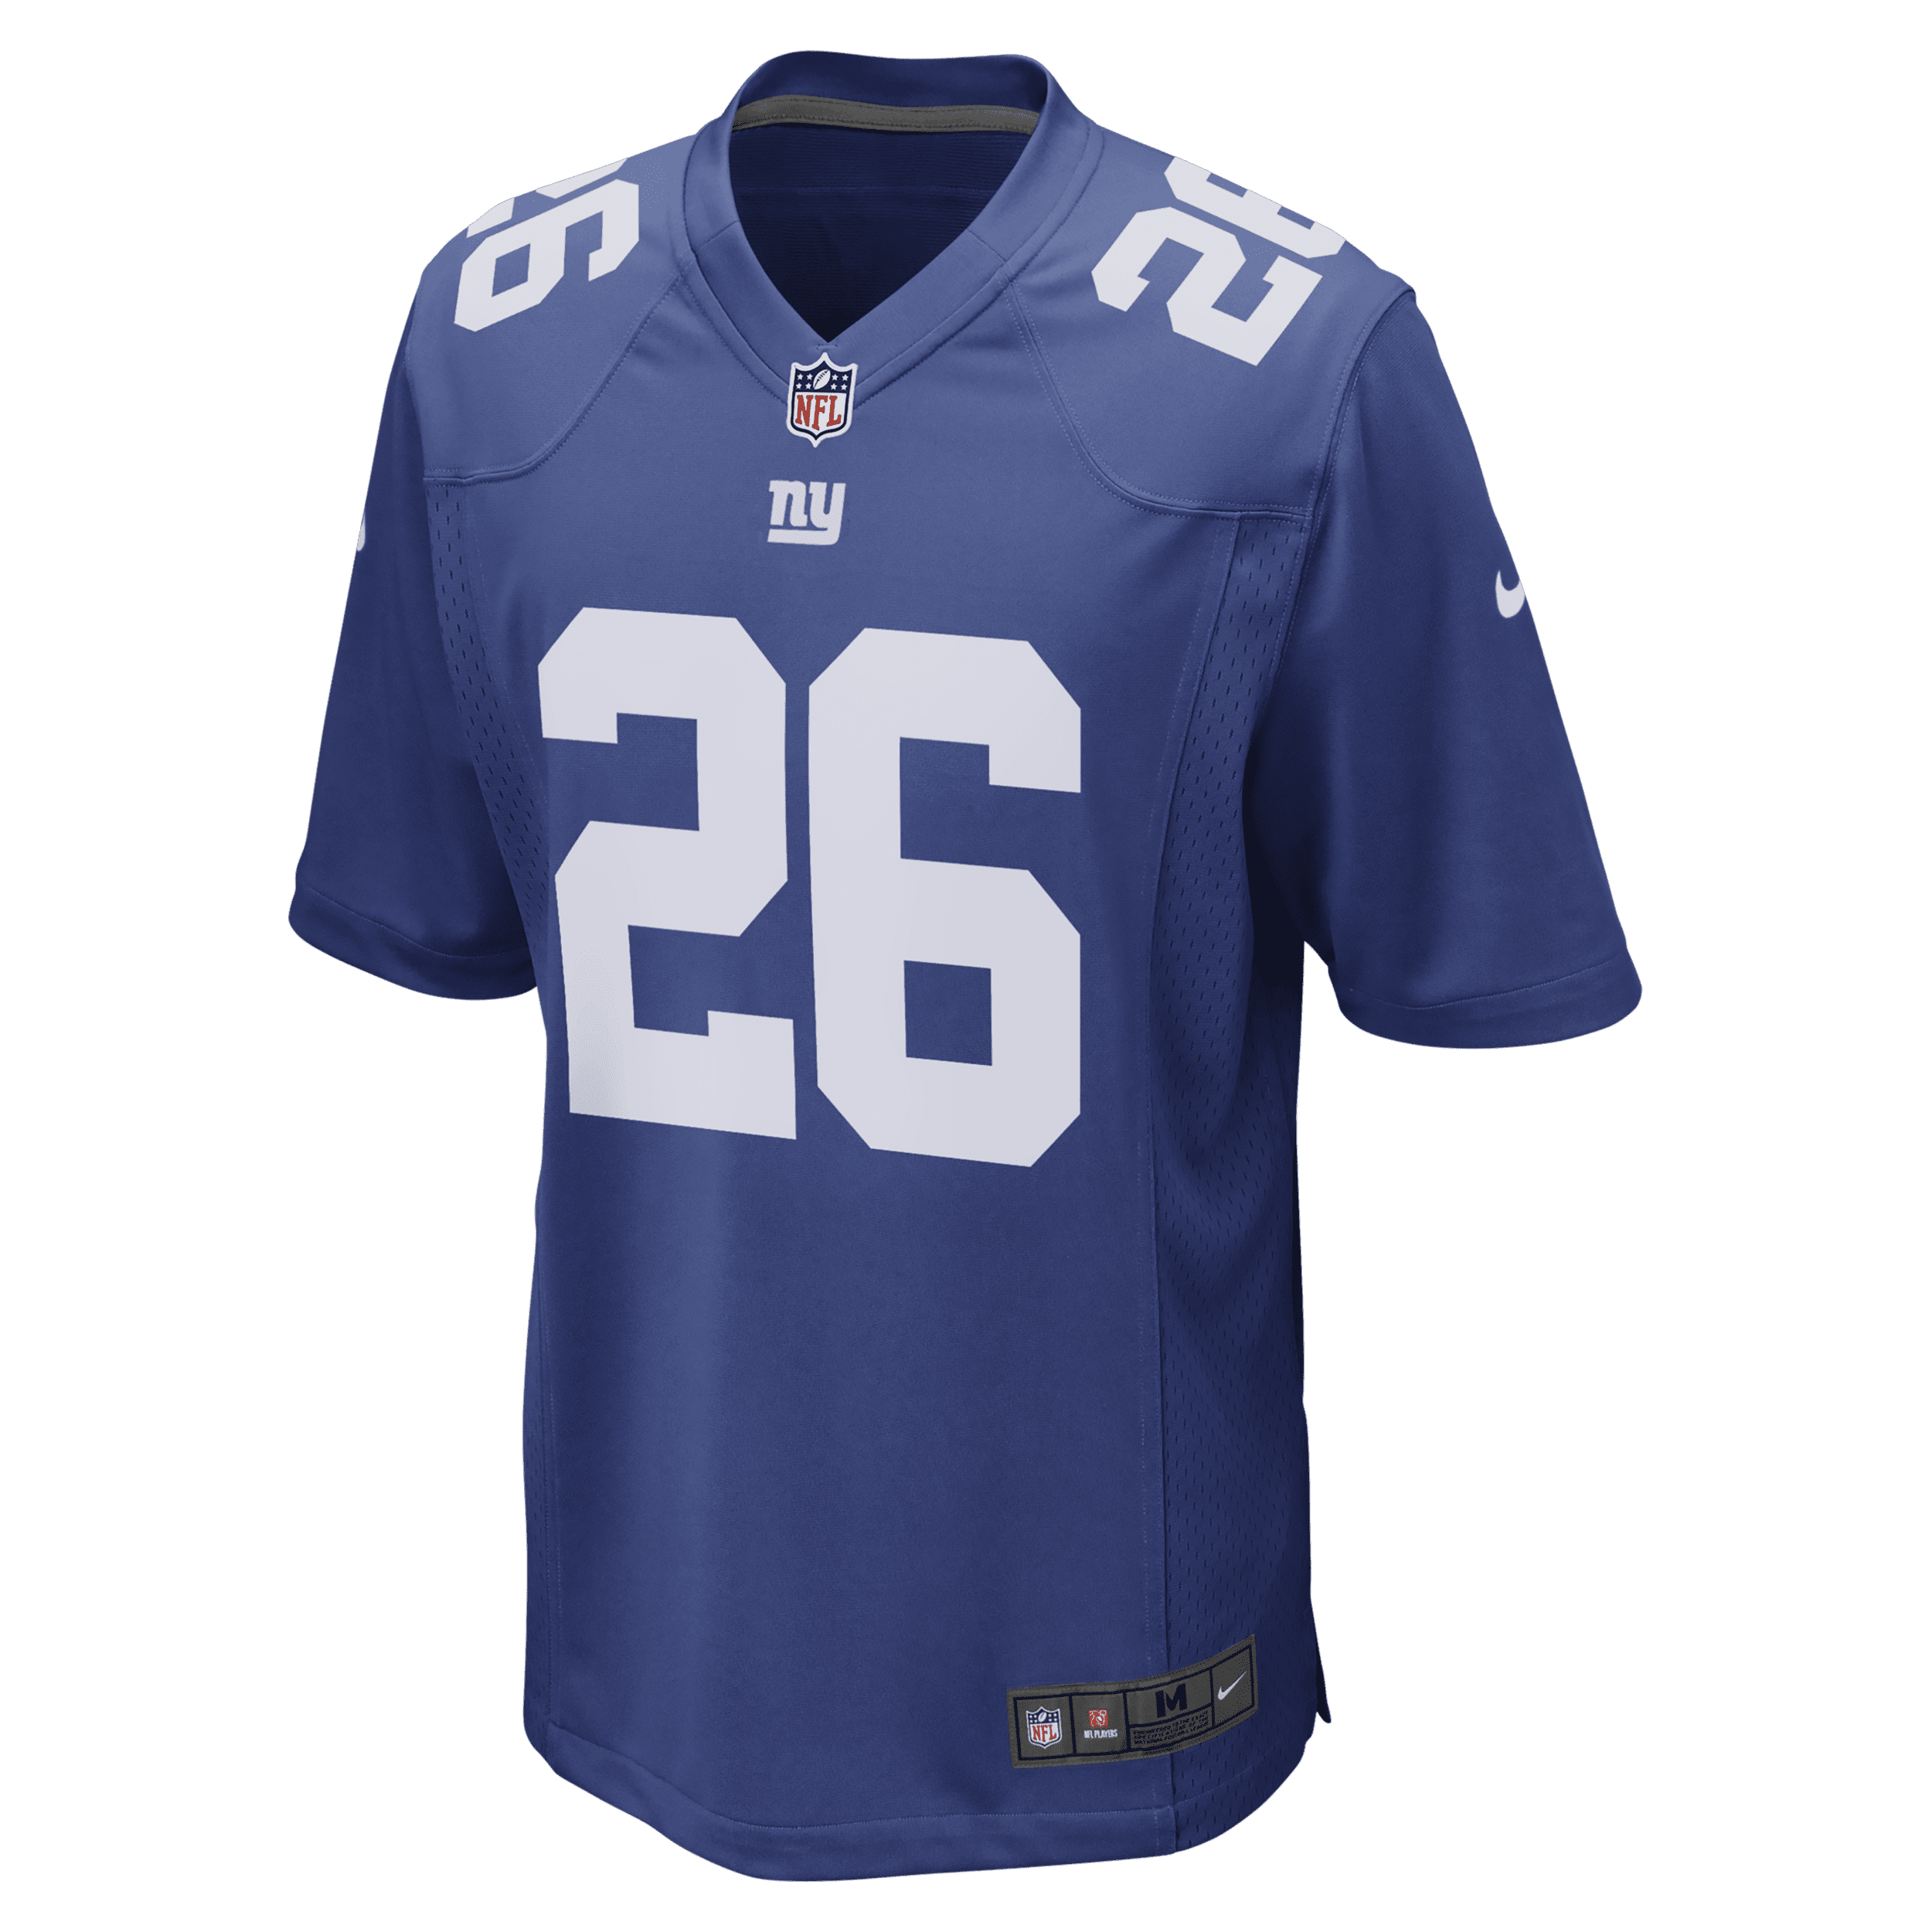 Nike NFL New York Giants-fodboldtrøje til mænd (Saquon Barkley) - blå